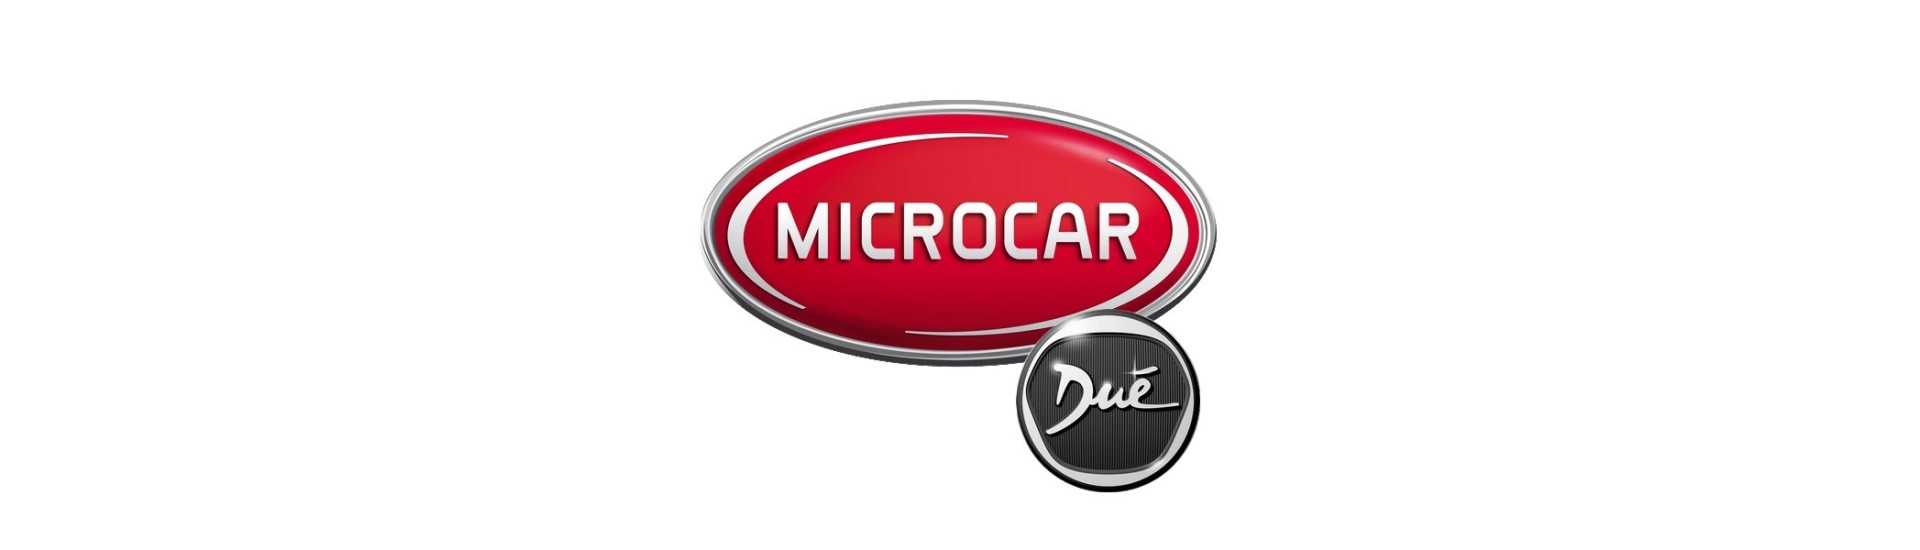 Mejor contador de precios para coche sin permiso Microcar Dué